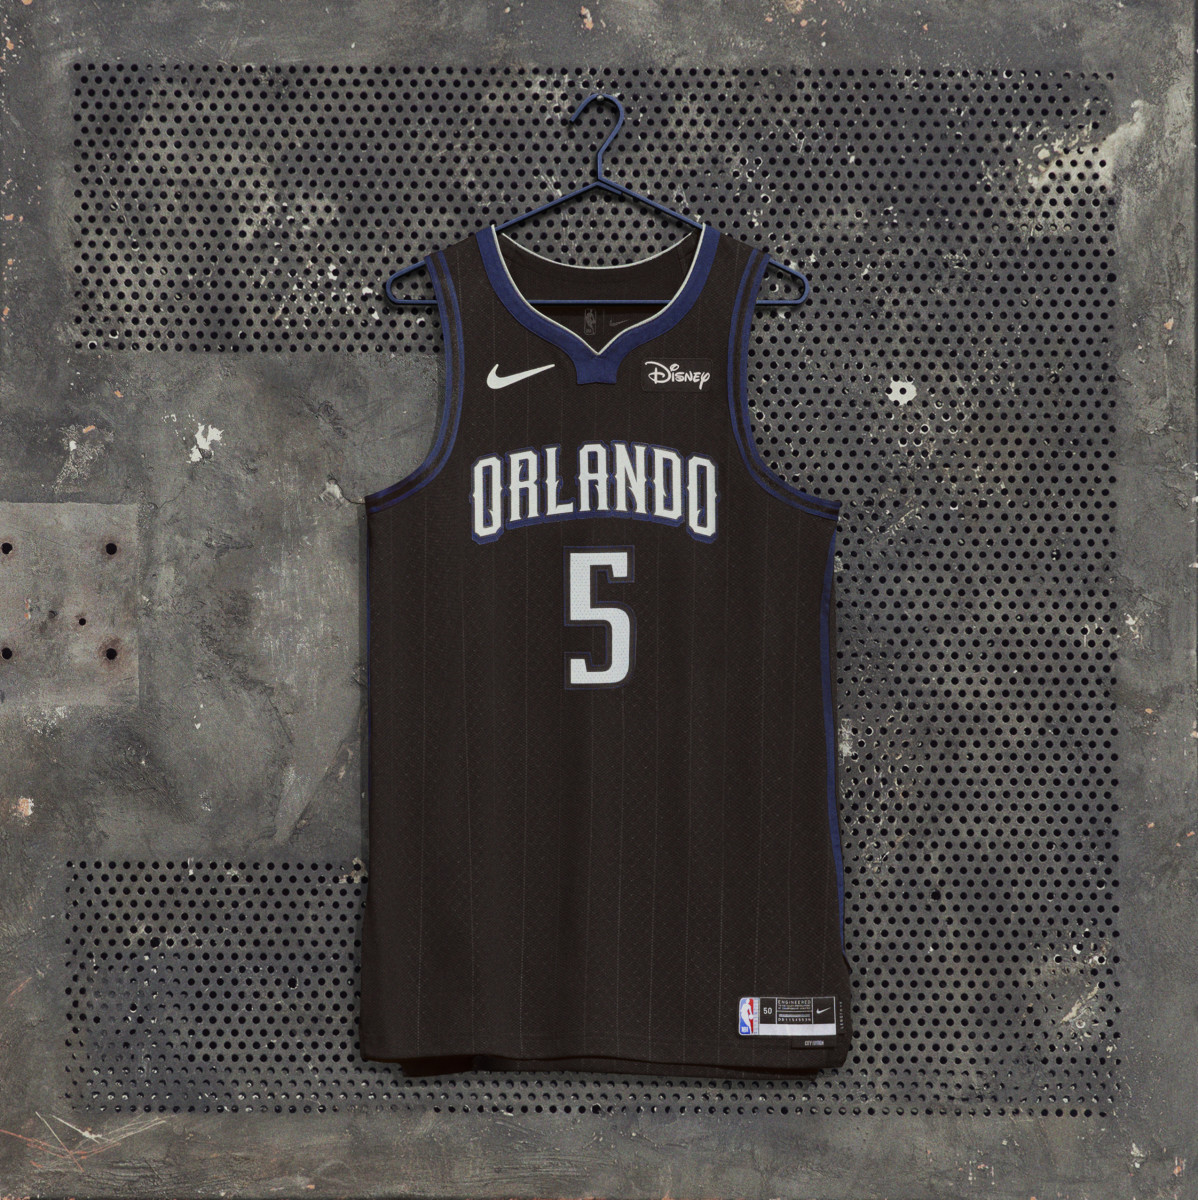 Concept jersey Nike NBA x Orlando Magic